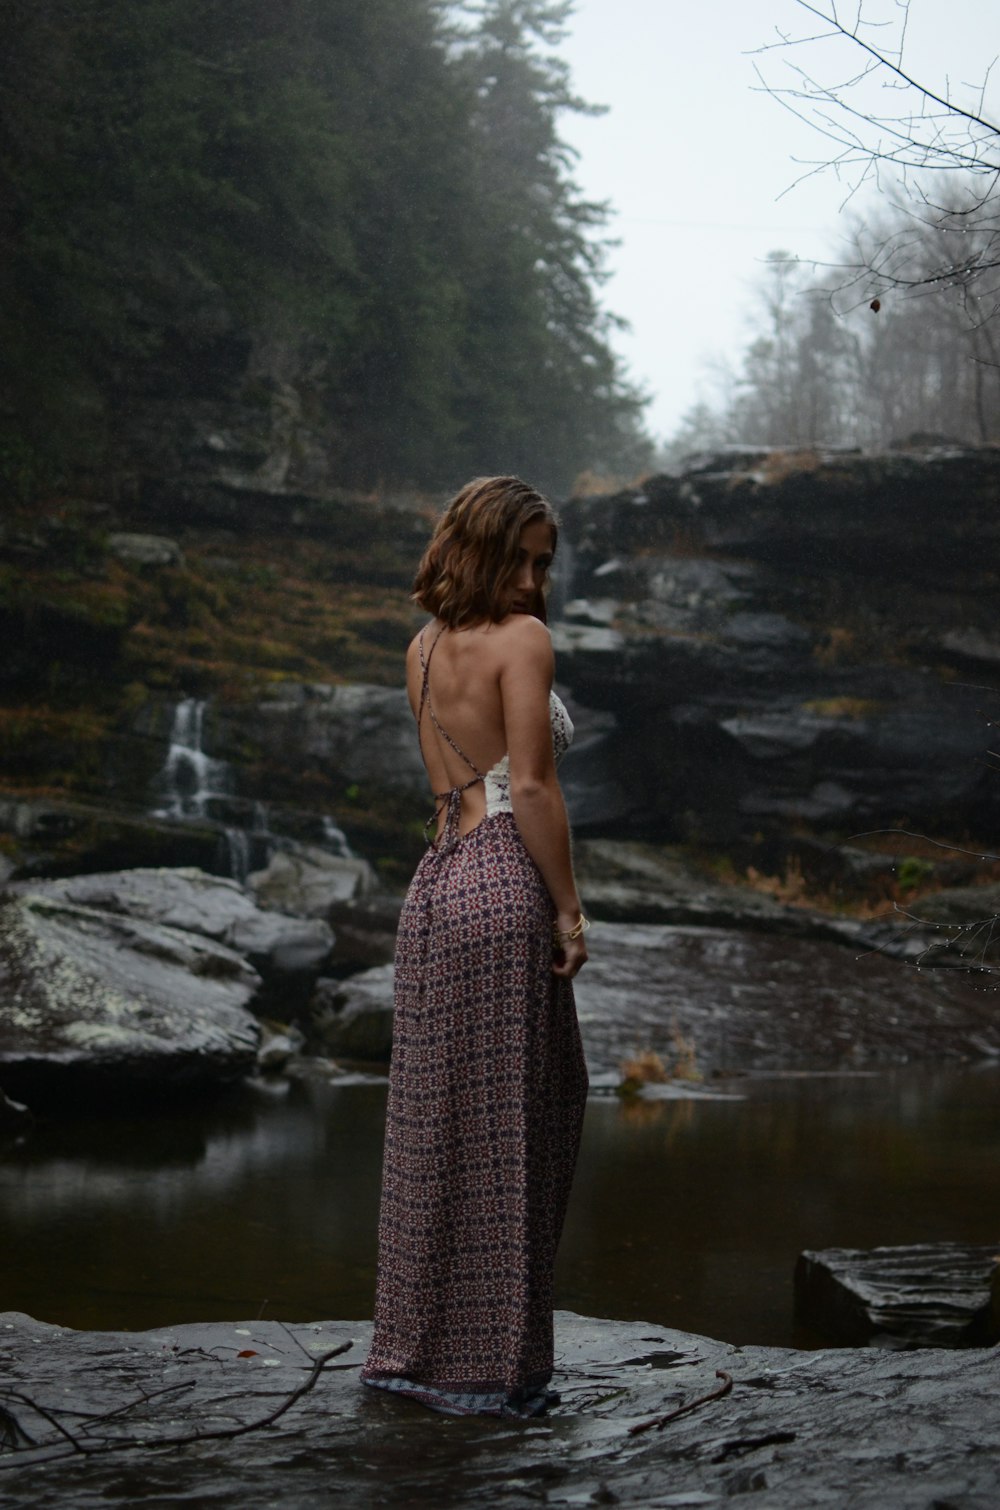 긴 드레스를 입은 여자가 바위 위에 서 있다